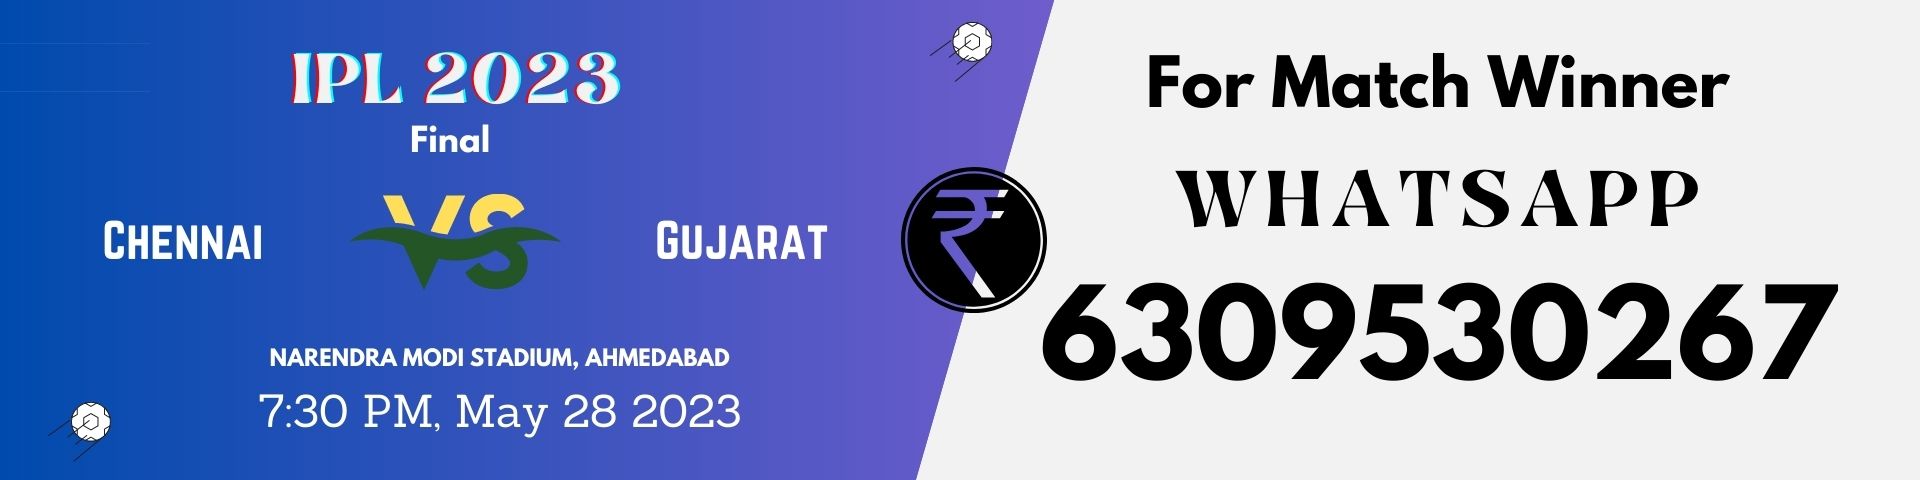 Chennai vs Gujarat Final on May 28, 2023